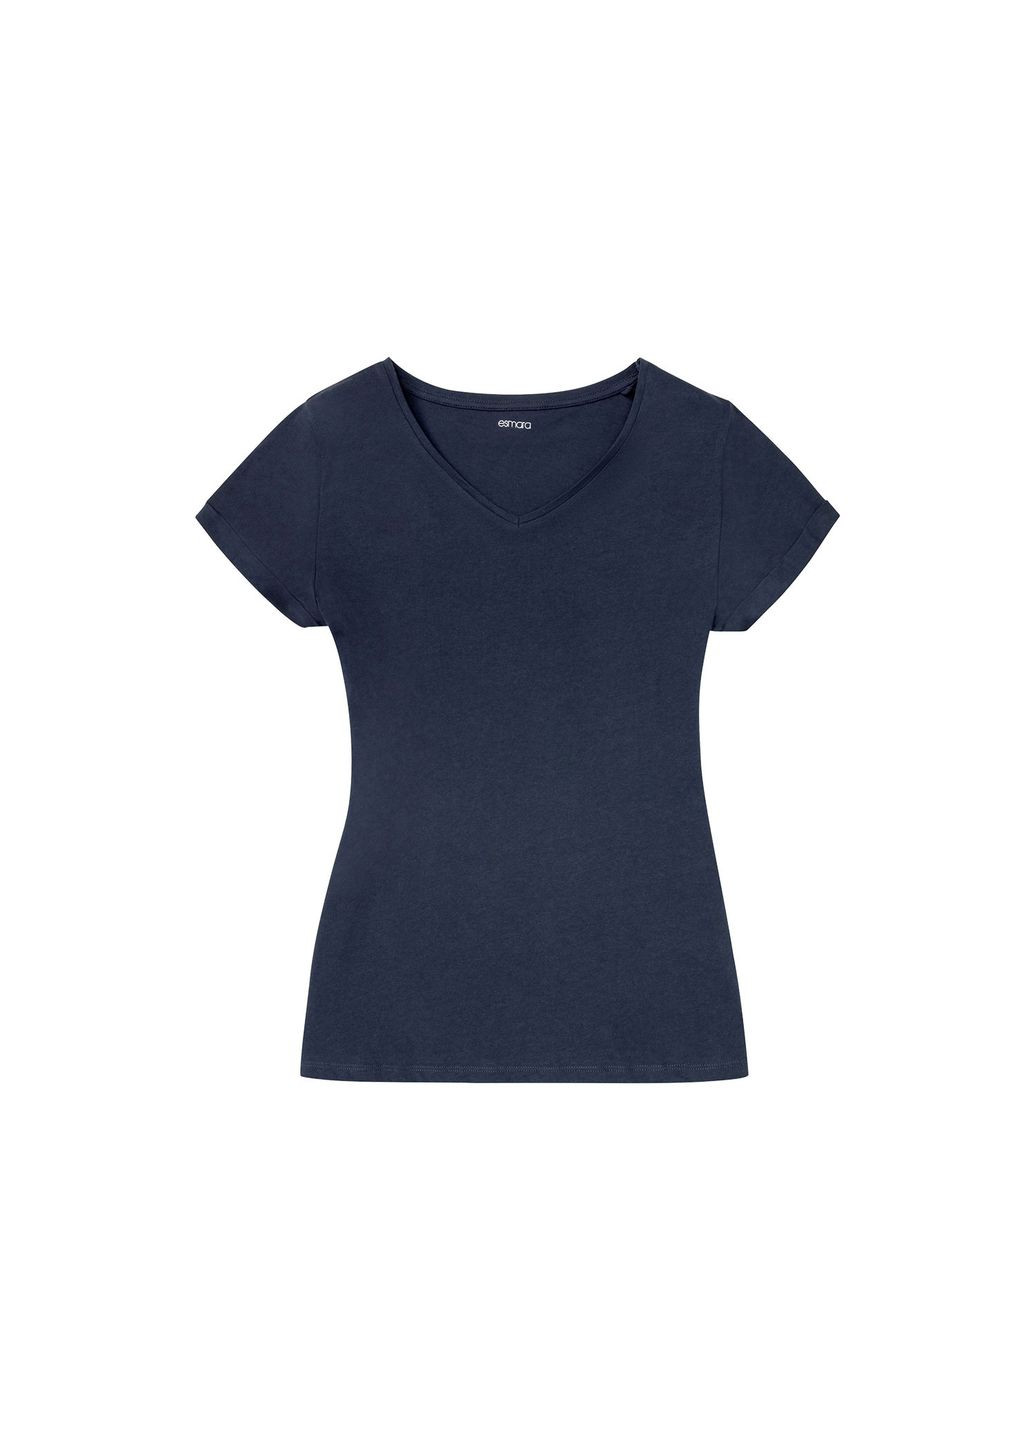 Темно-синяя пижама (футболка и шорты) для женщины 356910-1 Esmara